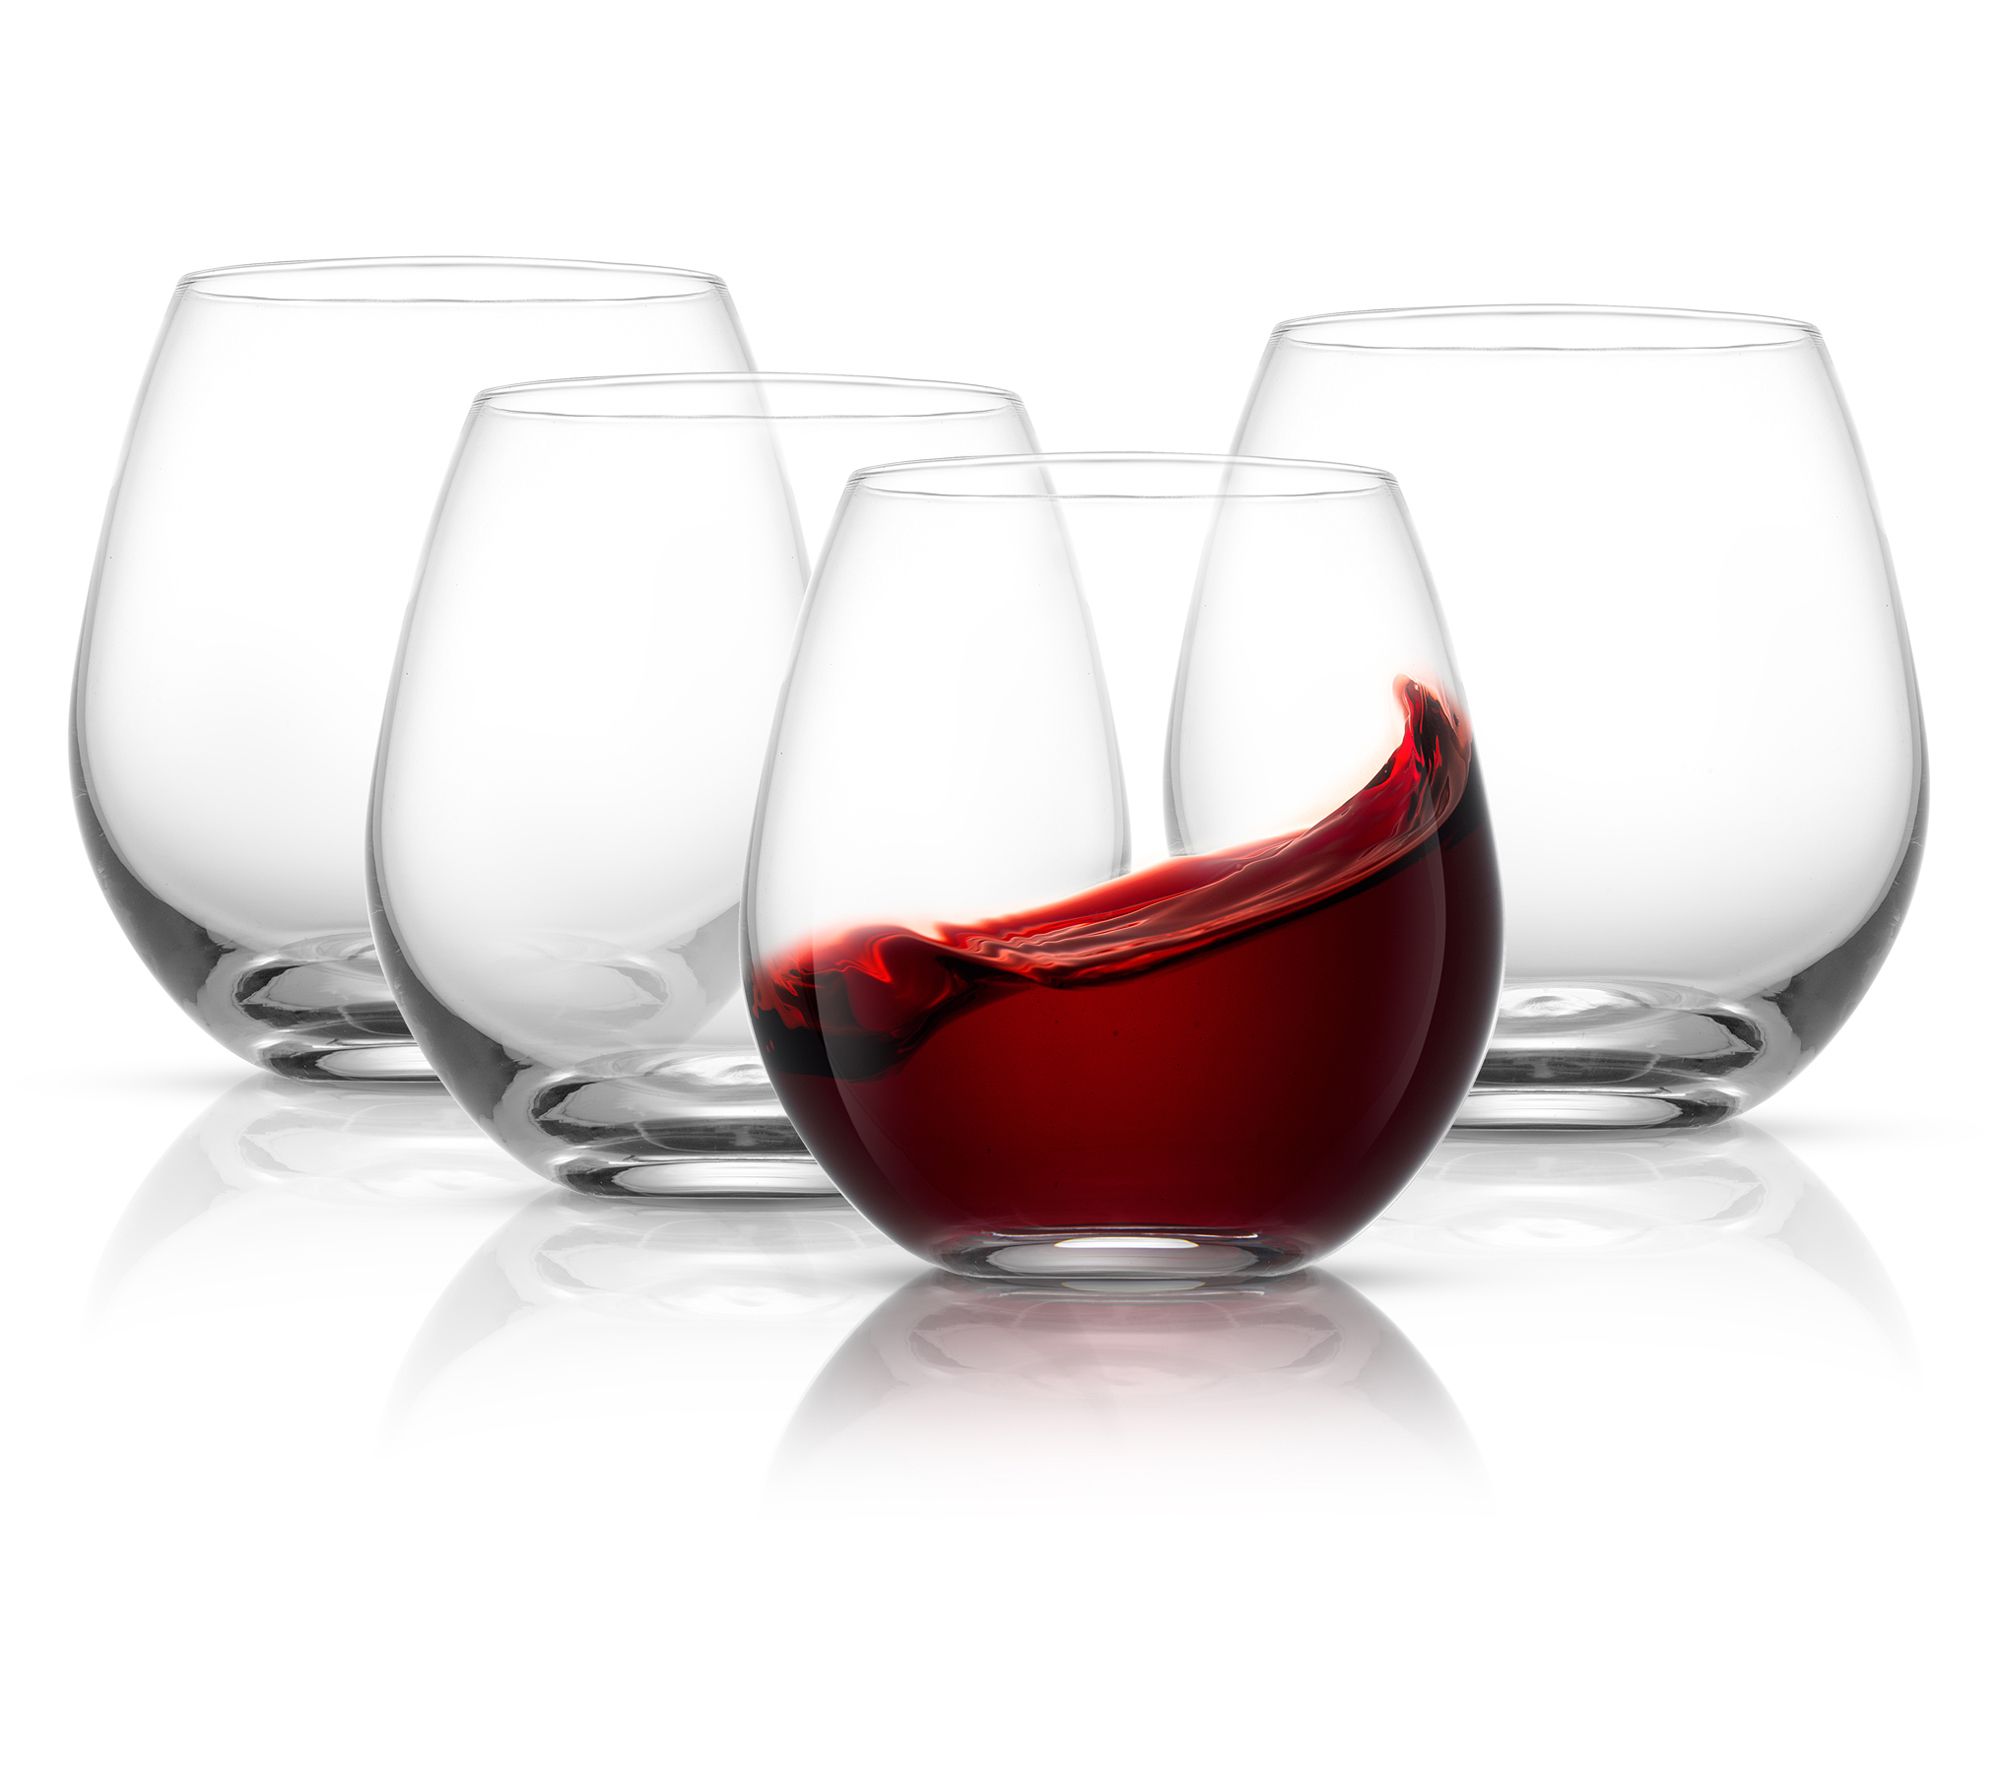 At Home Essentials Set of 4 Stemmed Wine Glasses, 15oz